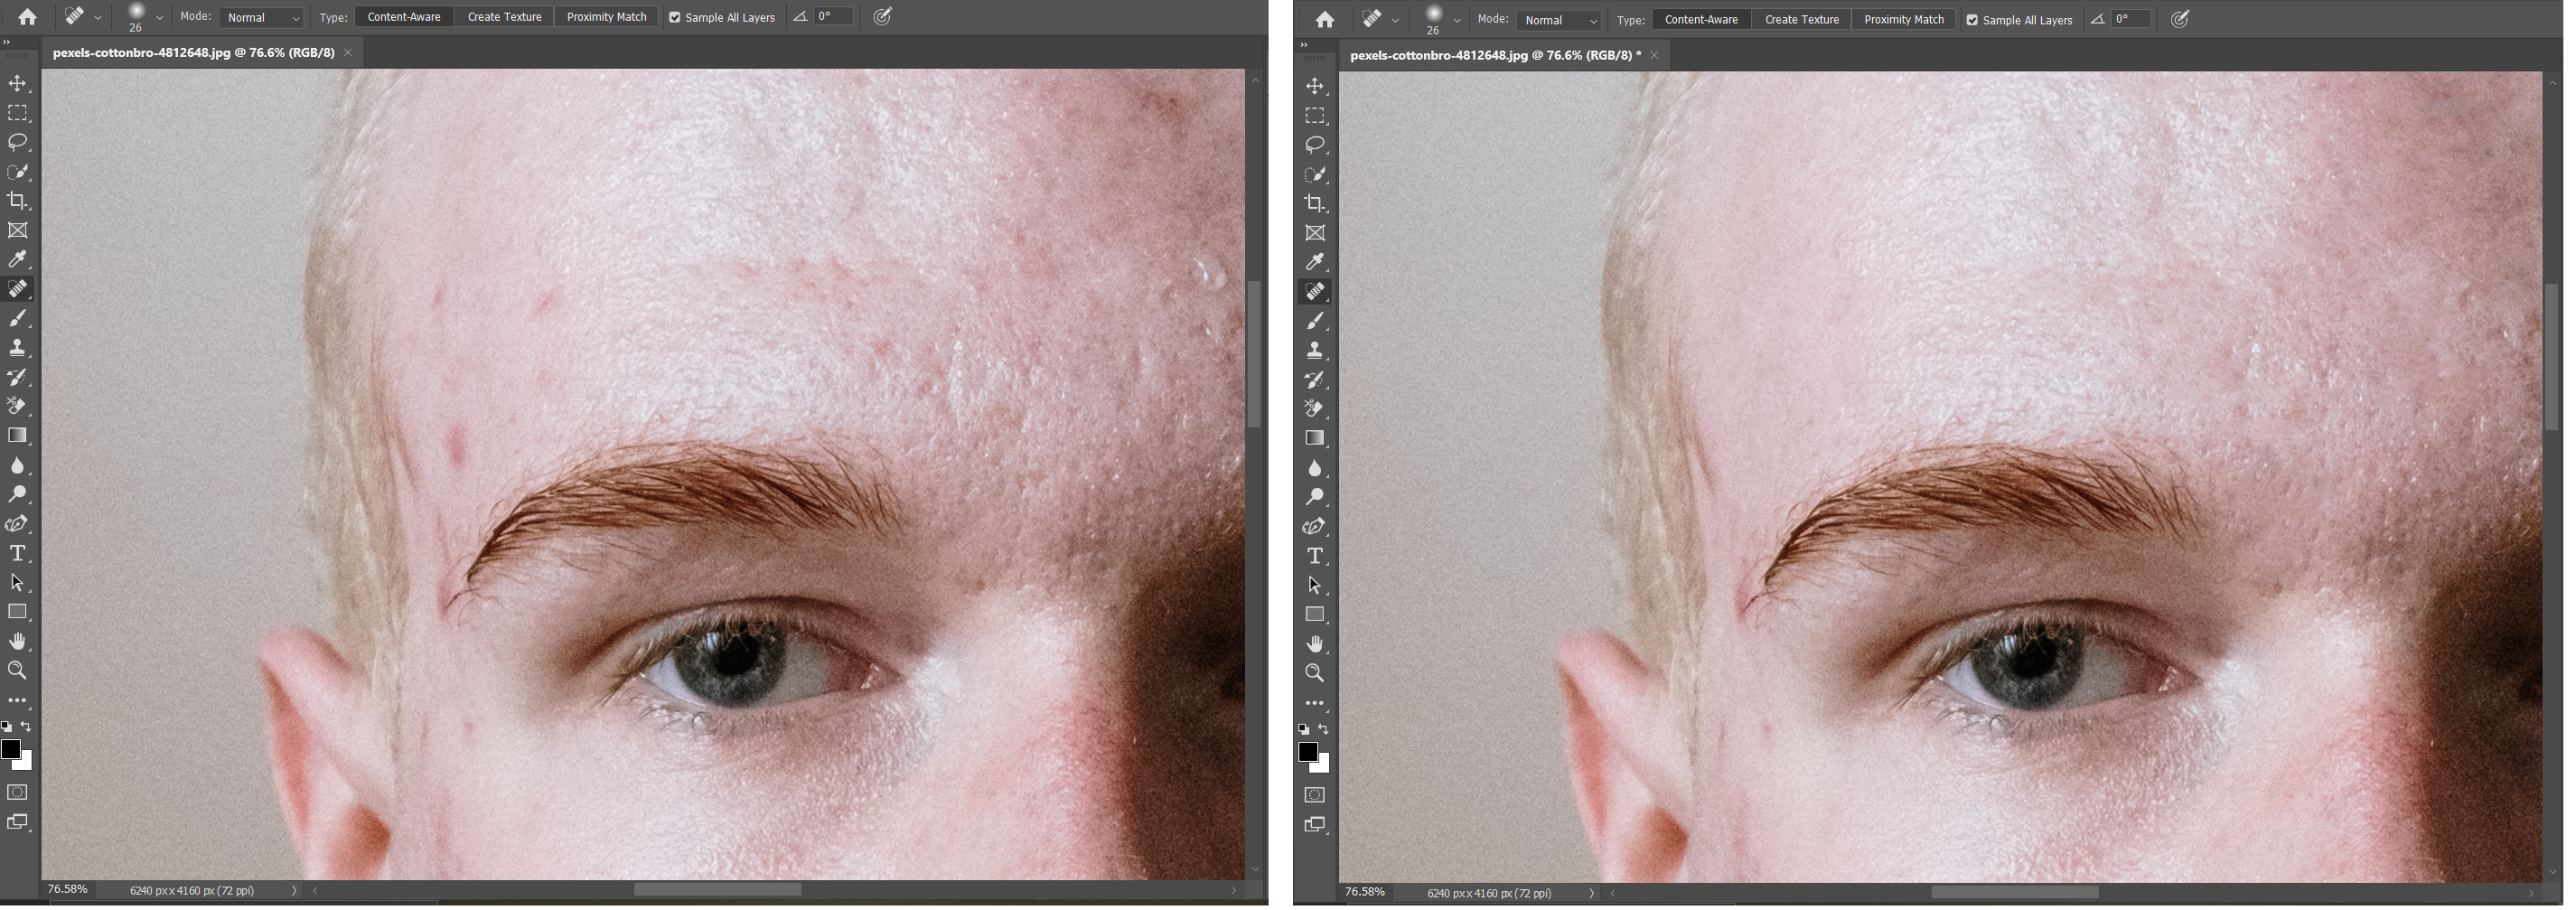 01 Spot Removal Before And After - 4 macchie che puoi rimuovere facilmente usando Photoshop